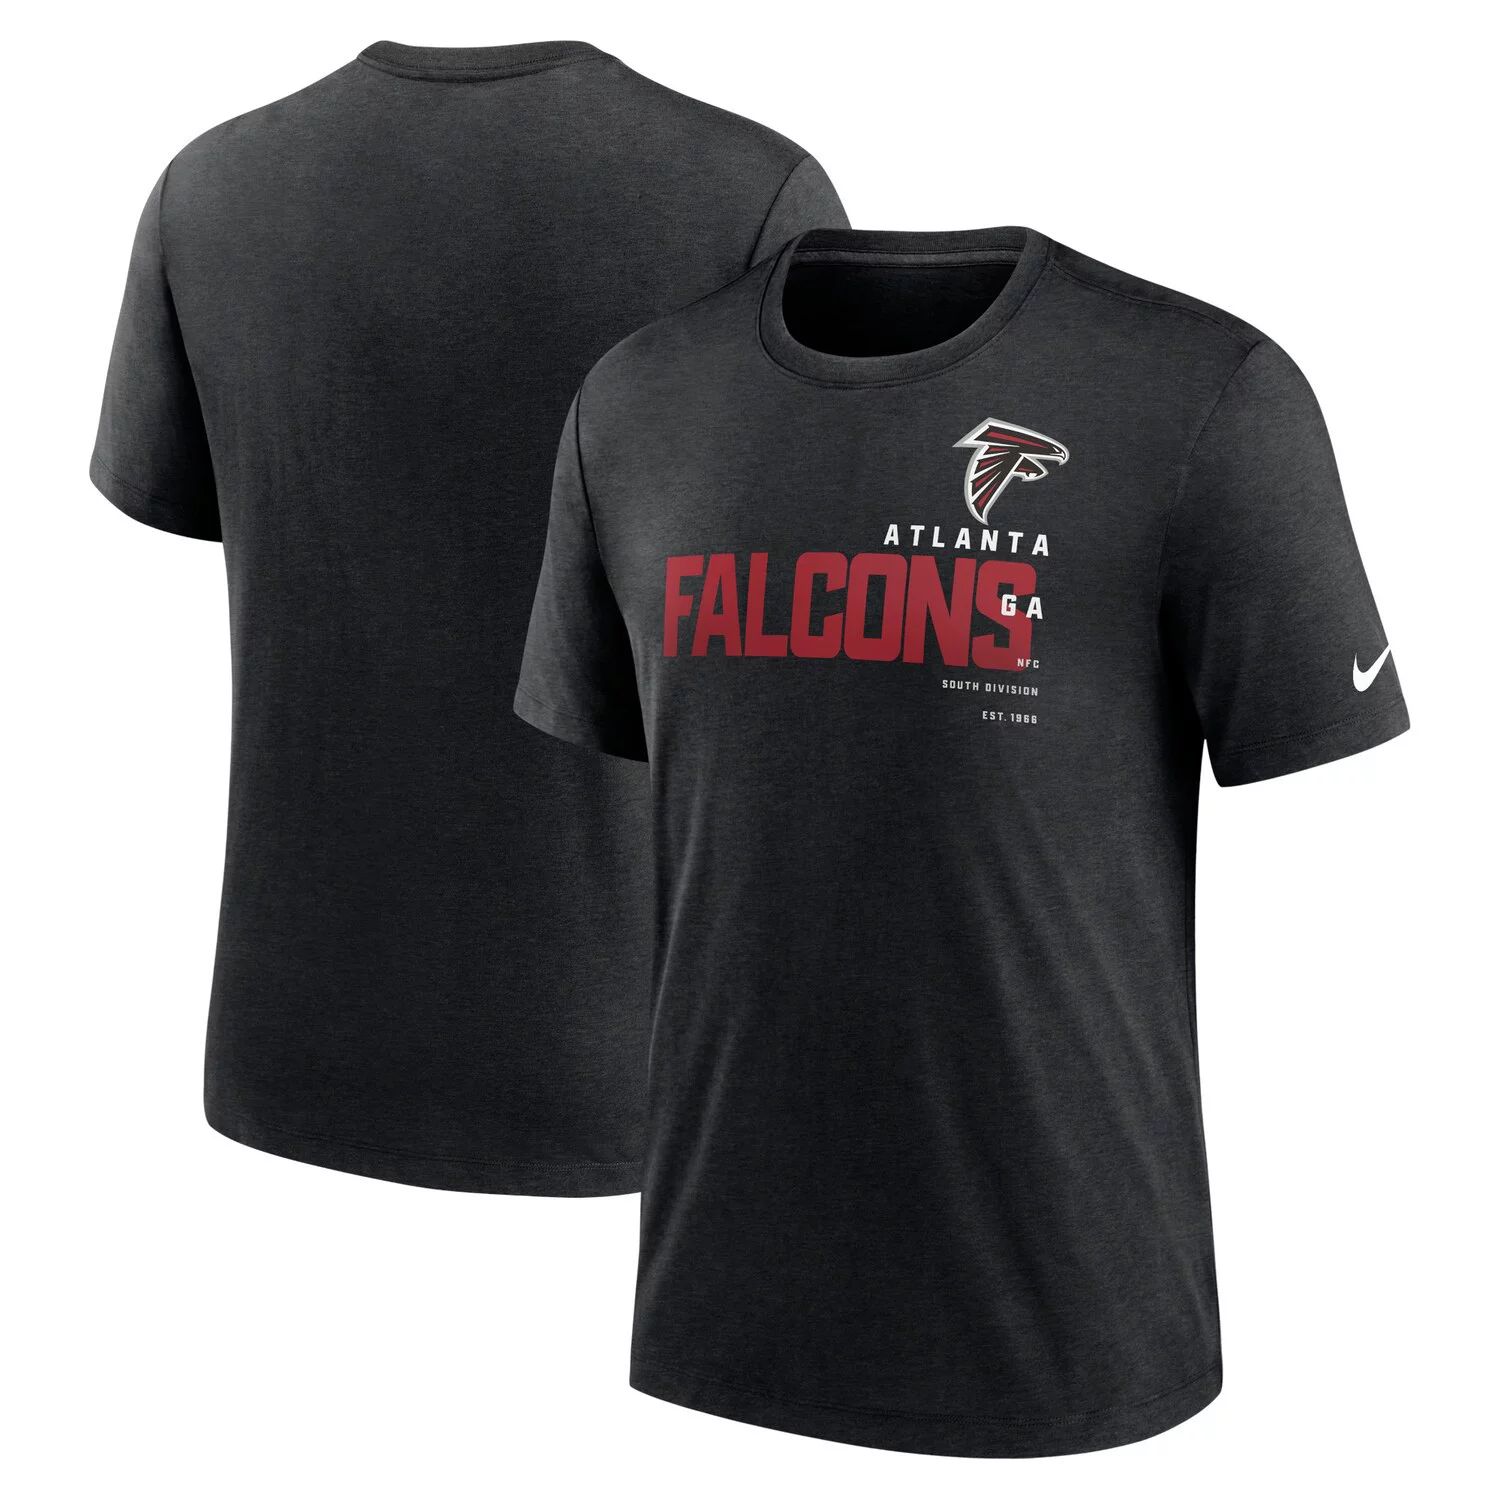 Мужская футболка Heather Black Atlanta Falcons Team Tri-Blend Nike мужская темно серая майка atlanta falcons tri blend nike